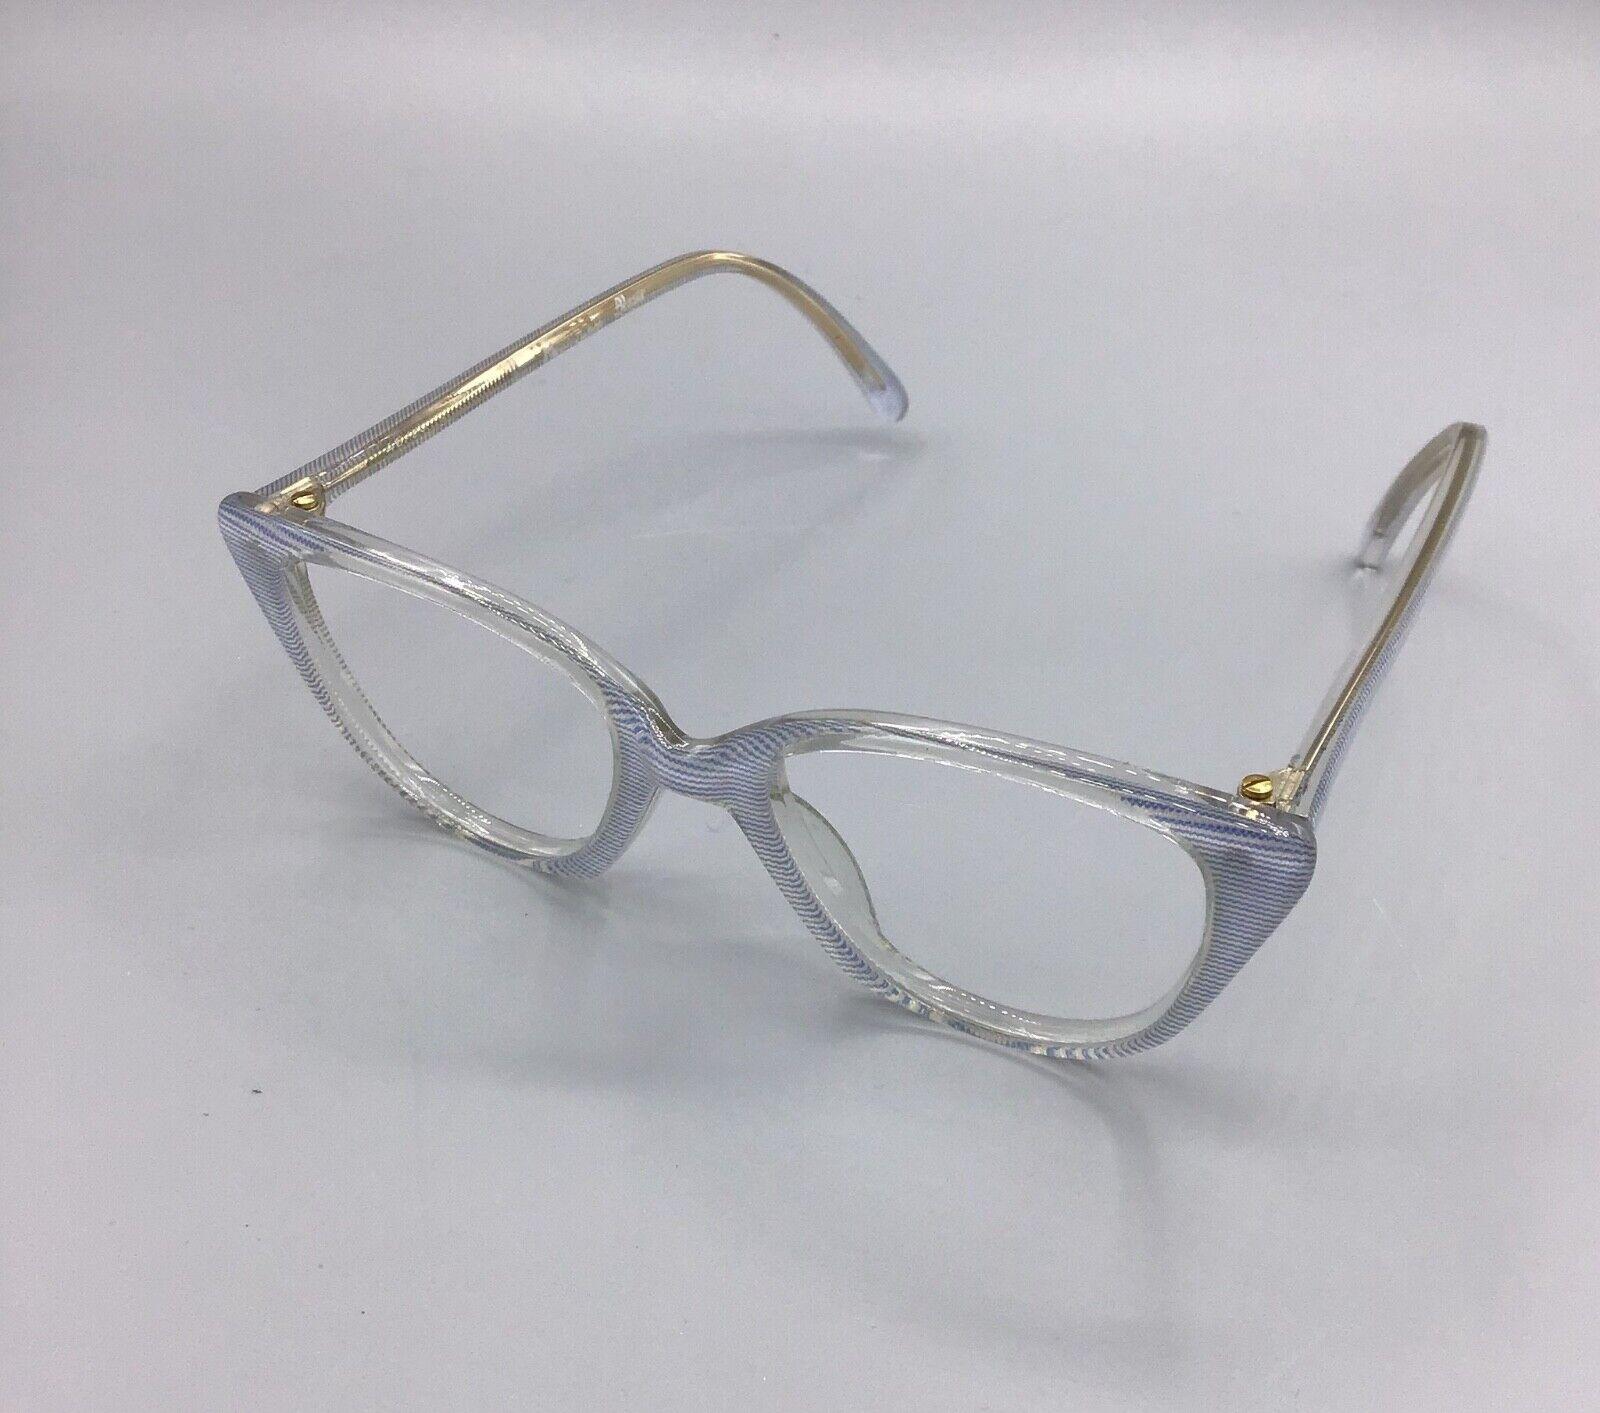 Metalflex occhiale vintage Eyewear frame brillen lunettes M/154 model